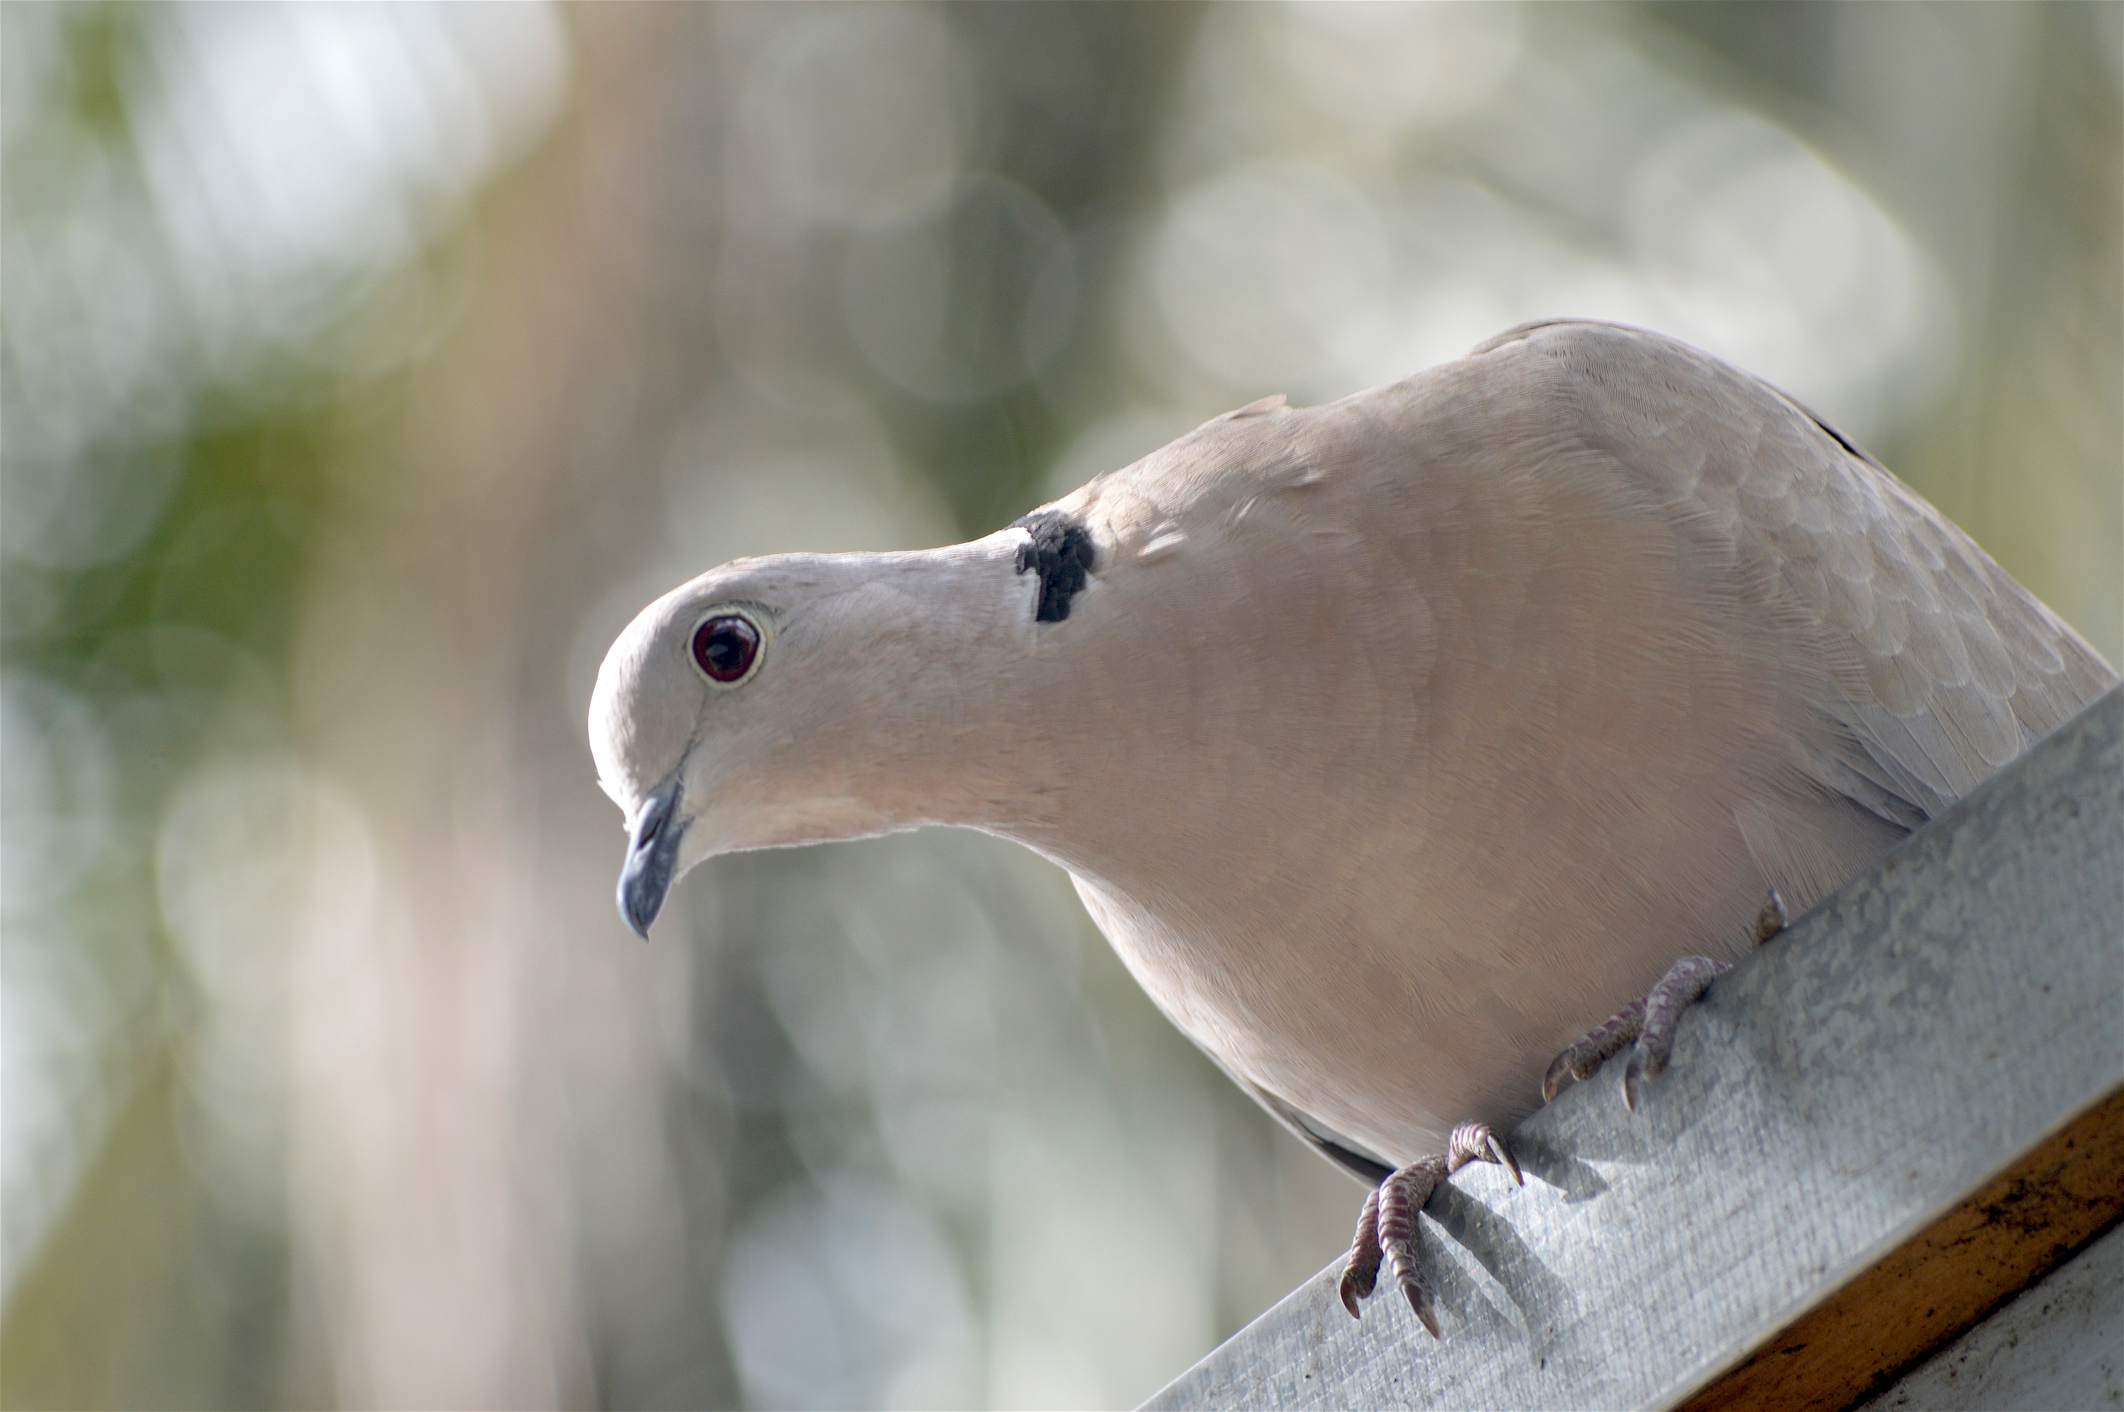 White dove perched